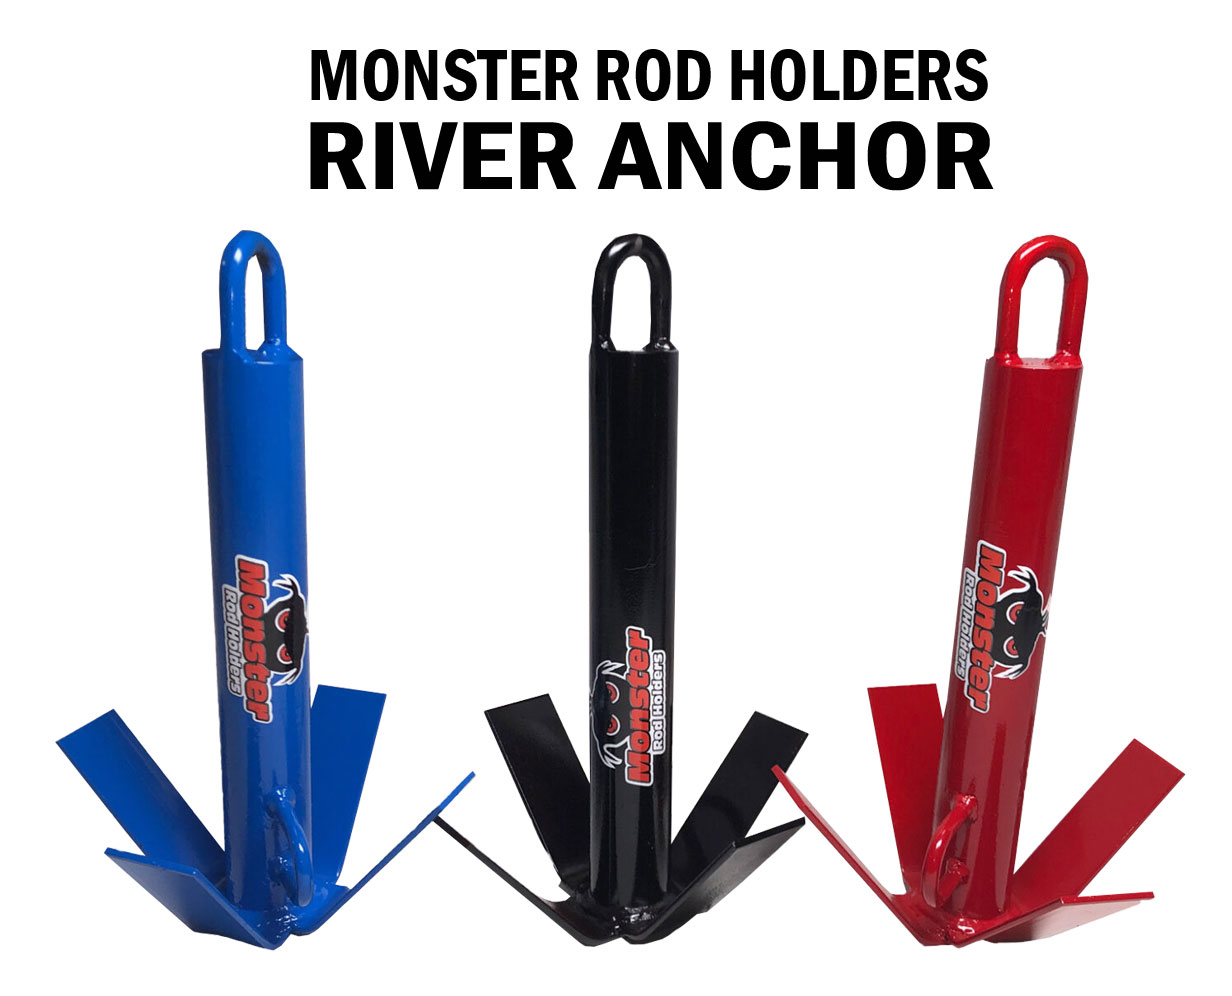 https://monsterrodholders.com/wp-content/uploads/2021/05/MONSTER-ROD-HOLDERS-RIVER-ANCHOR.jpg